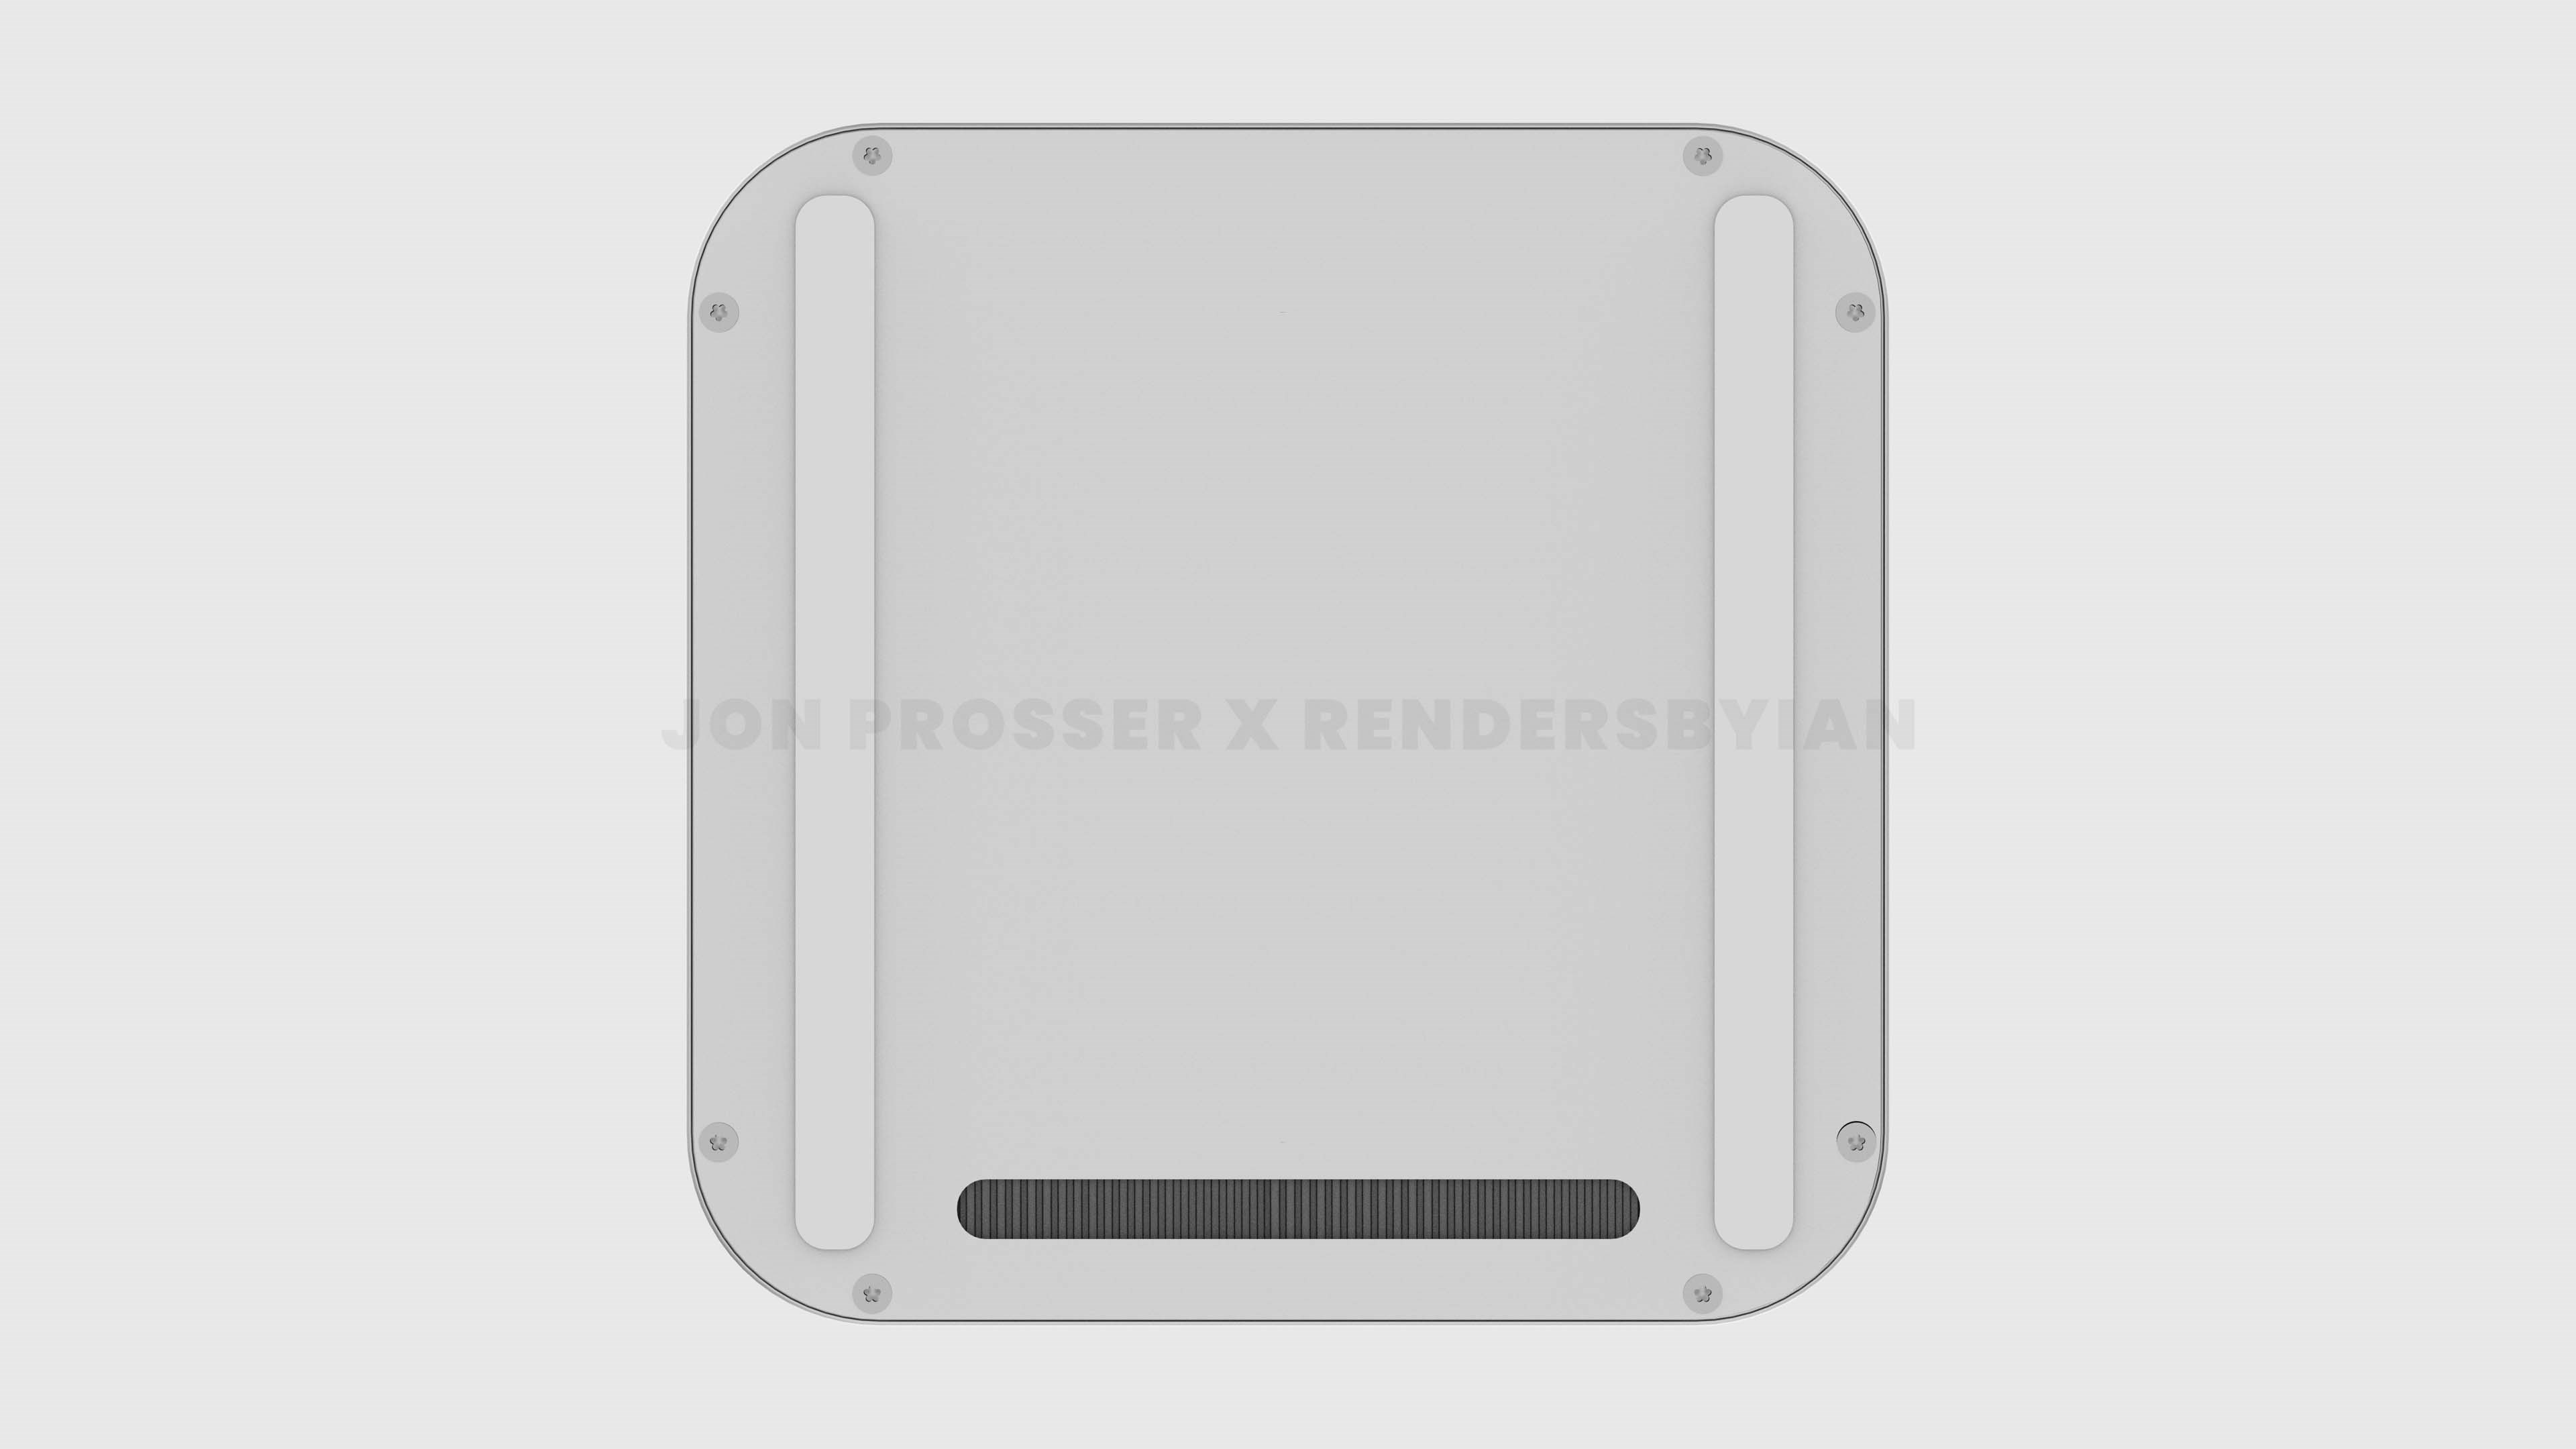 M1X işlemcili yeni Mac mini'nin tasarımı ortaya çıktı